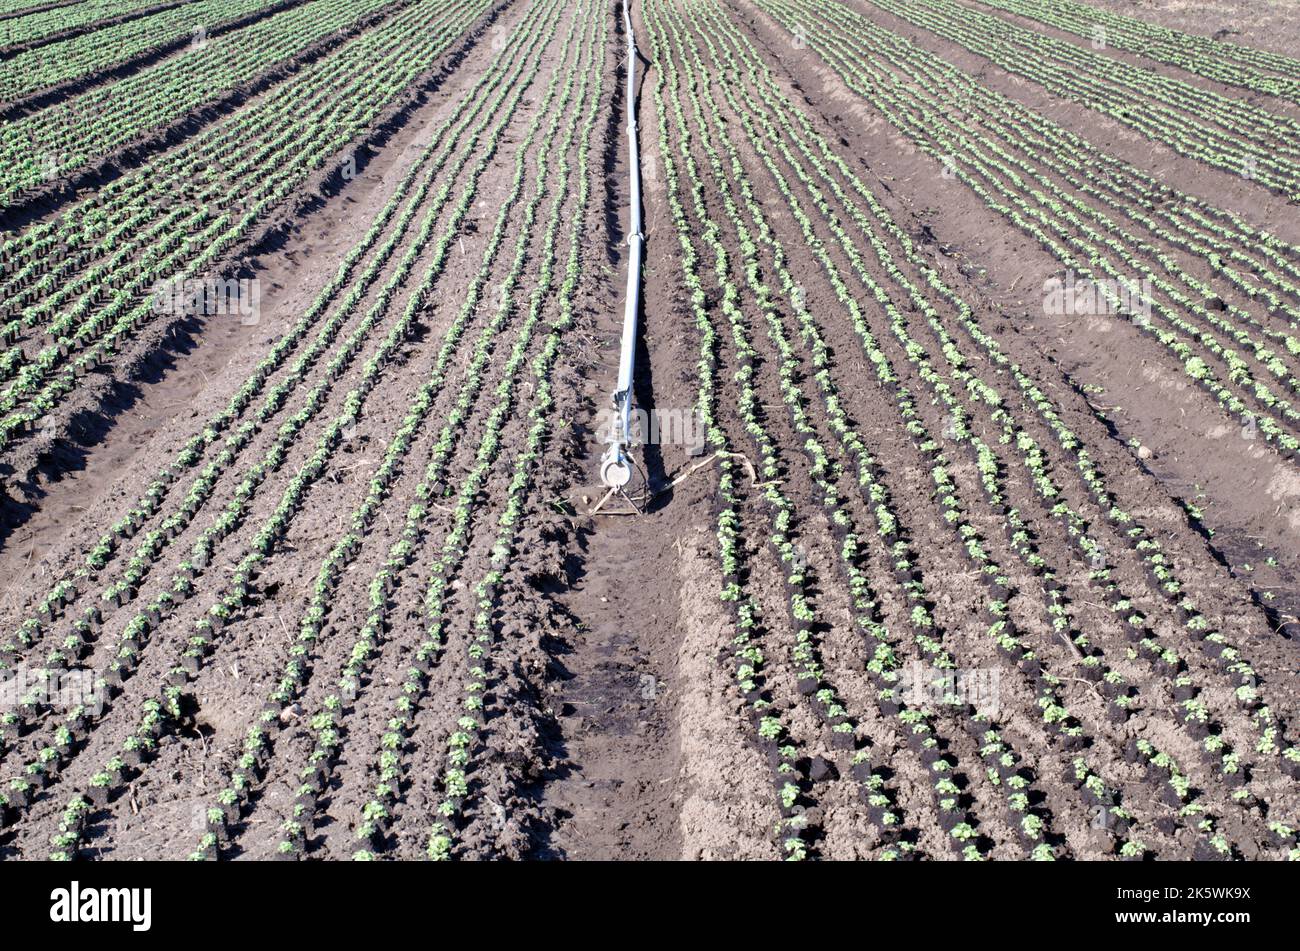 Agricultura, producción alimentaria de hortalizas: Campo con hileras de lechugas jóvenes y pipa de riego Foto de stock